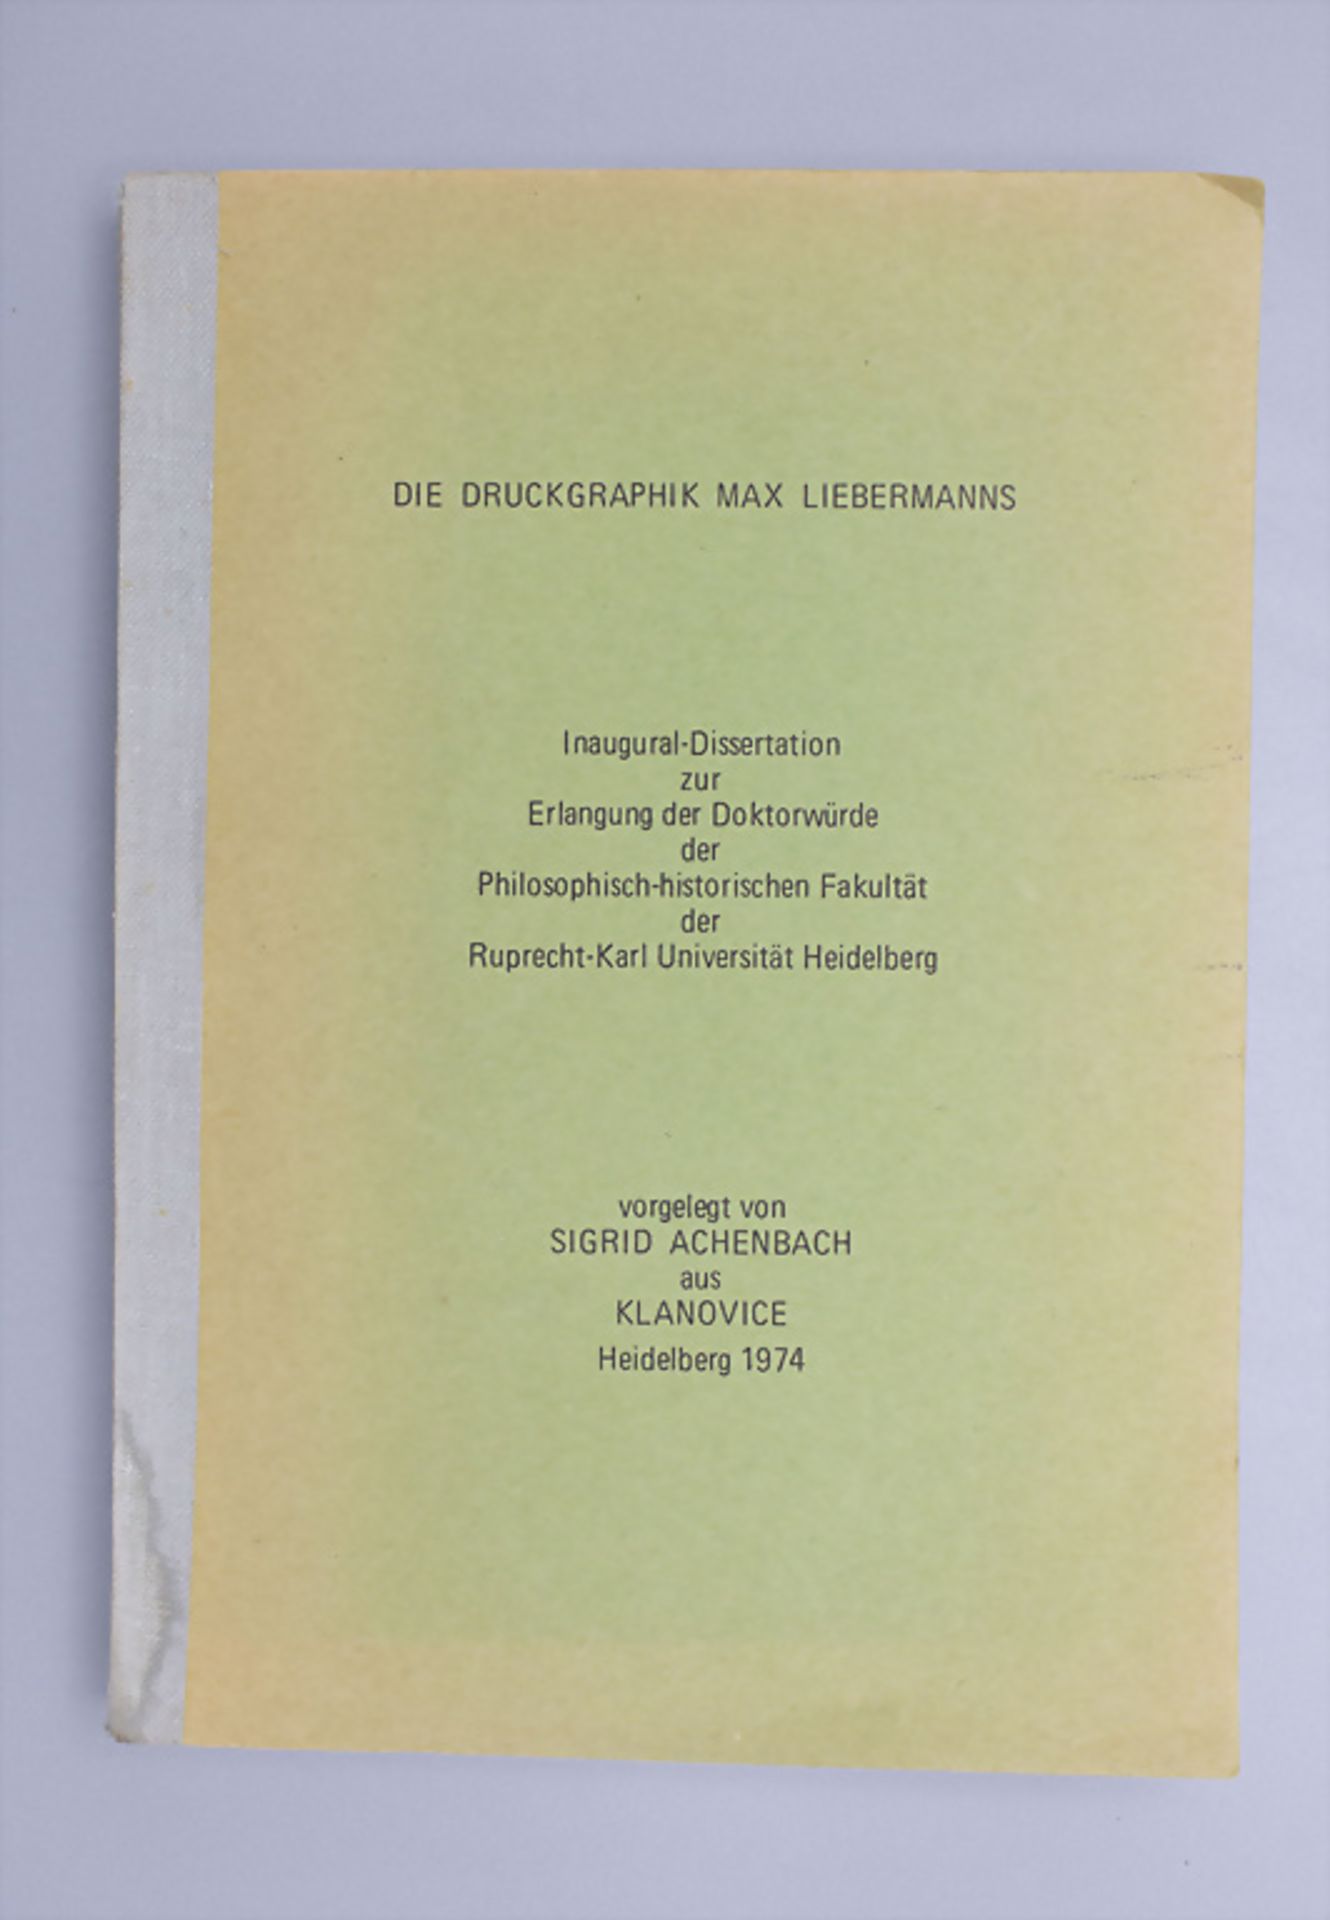 Sigrid Achenbach: 'Die Druckgrafik Max Liebermanns', Dissertation, Heidelberg, 1974